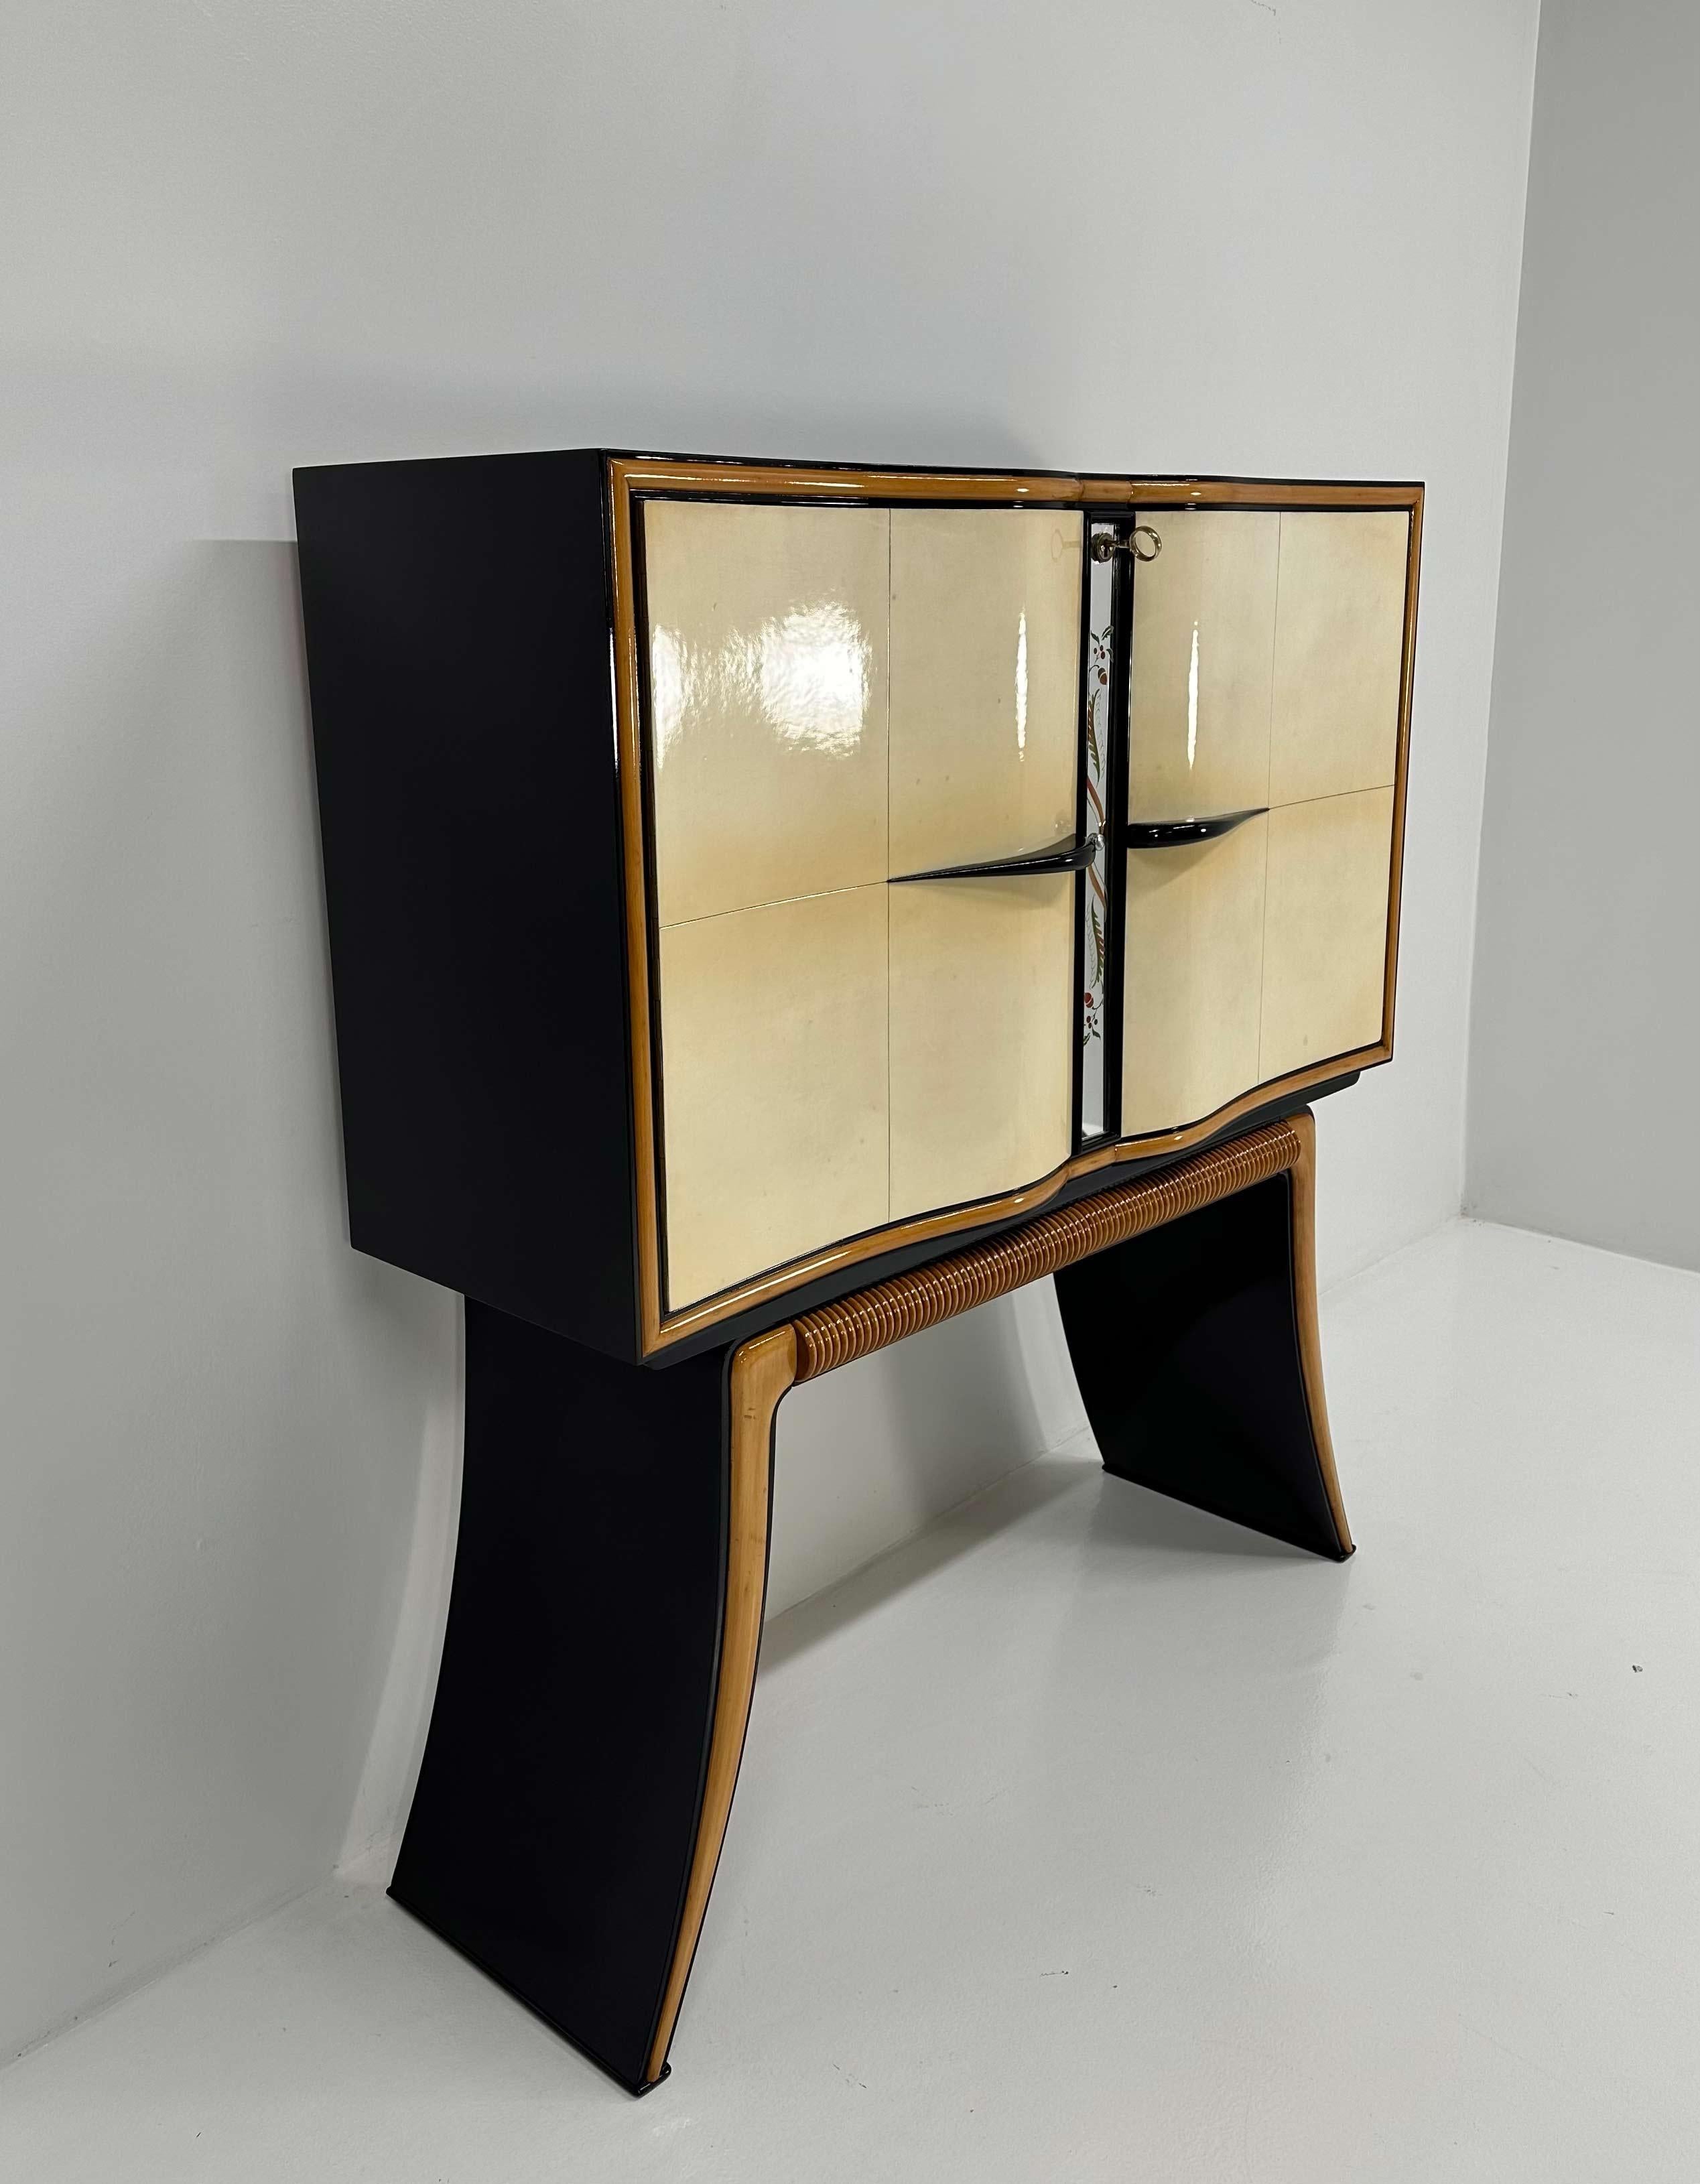 Italian Art Deco Paolo Buffa Parchment, Maple, Black, Mirrors Bar Cabinet, 40s For Sale 1